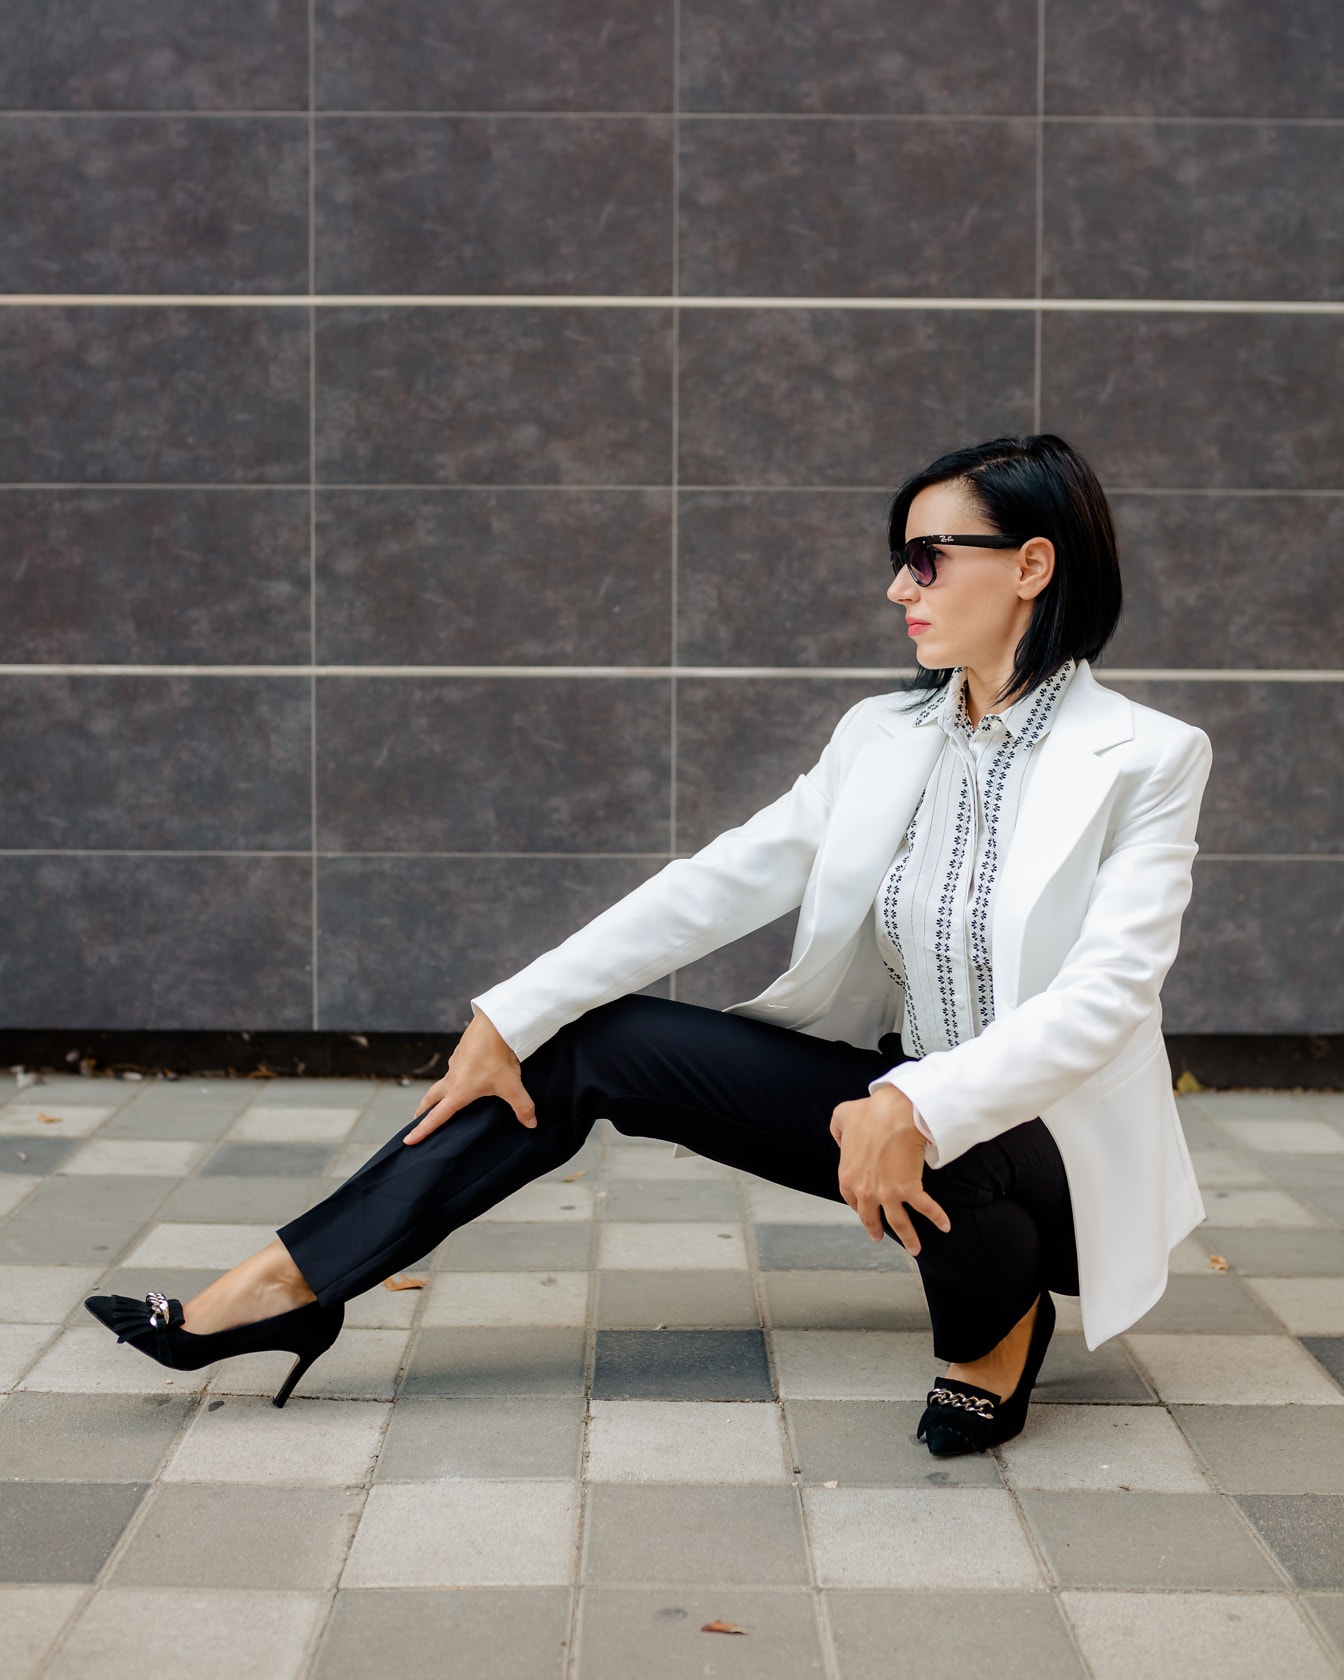 Erfolgreiche Geschäftsfrau im schwarz-weißen Outfit